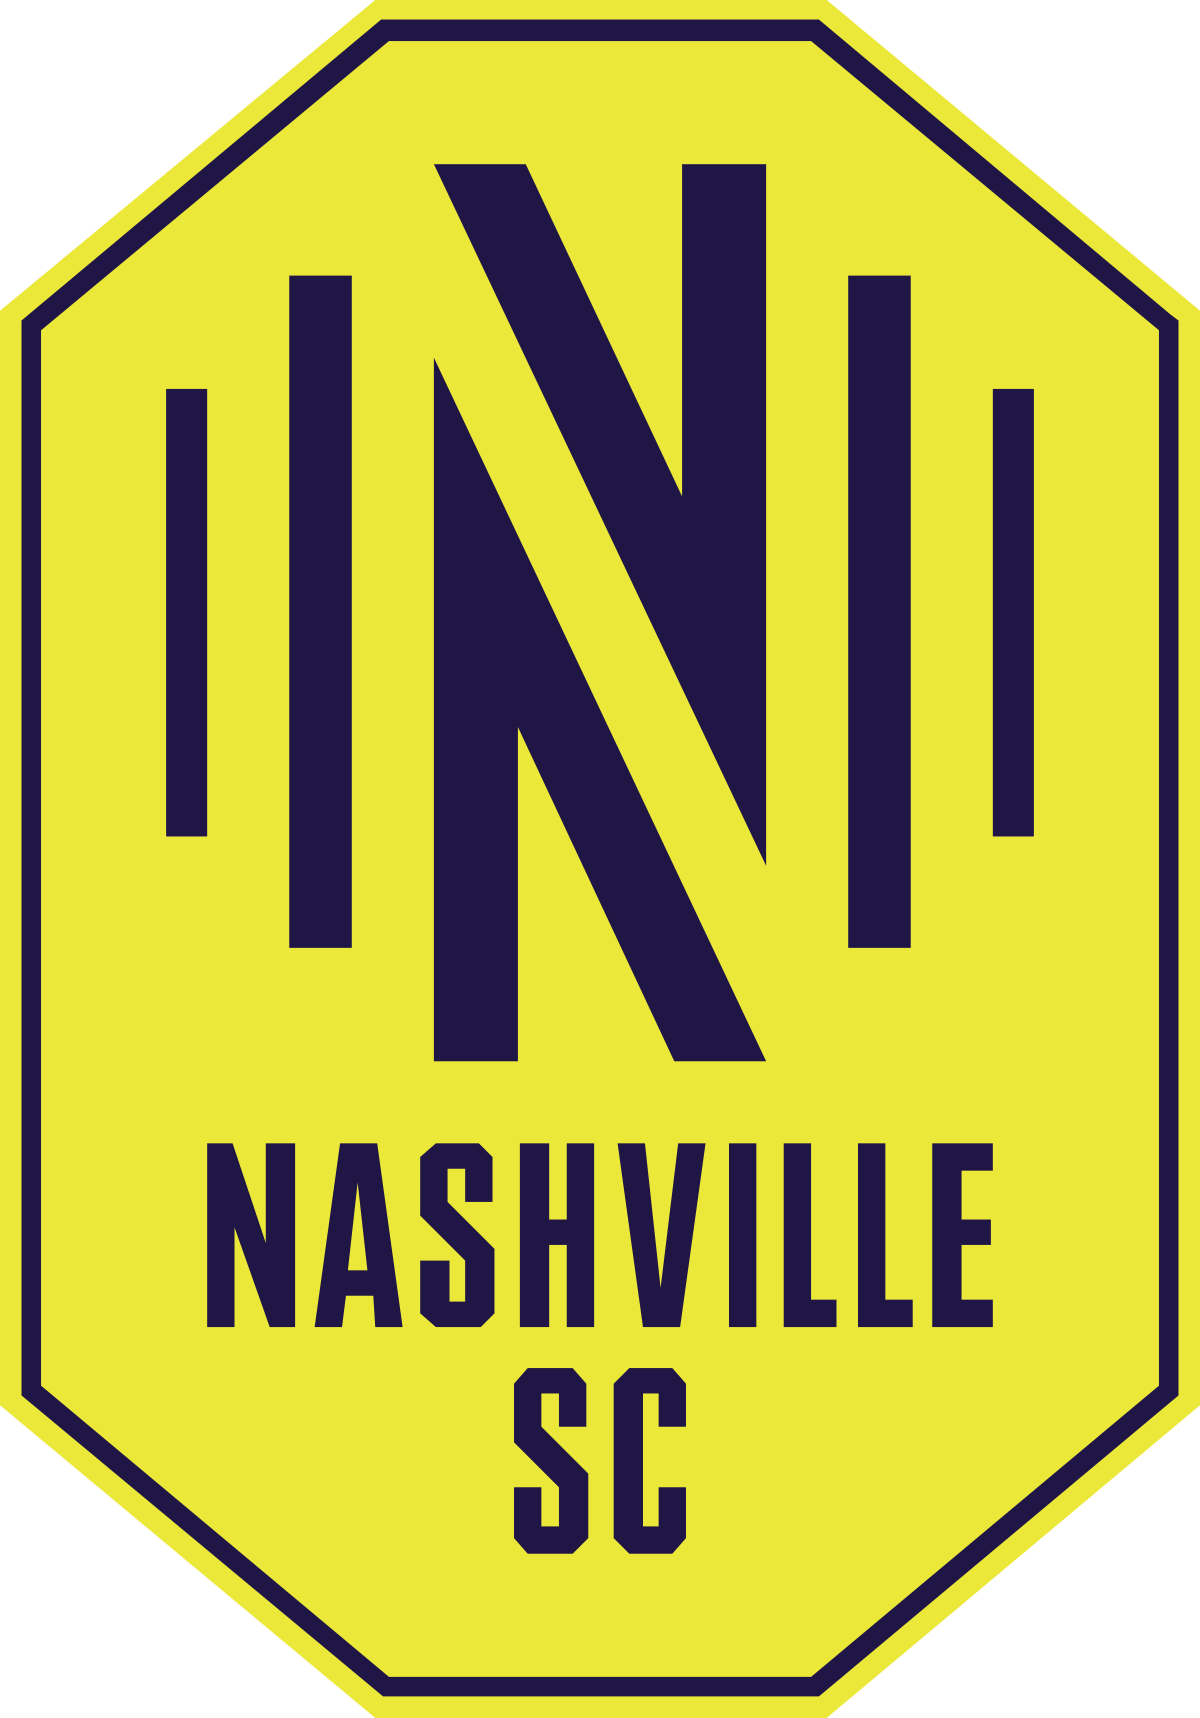 Nashville SC - Wikipedia